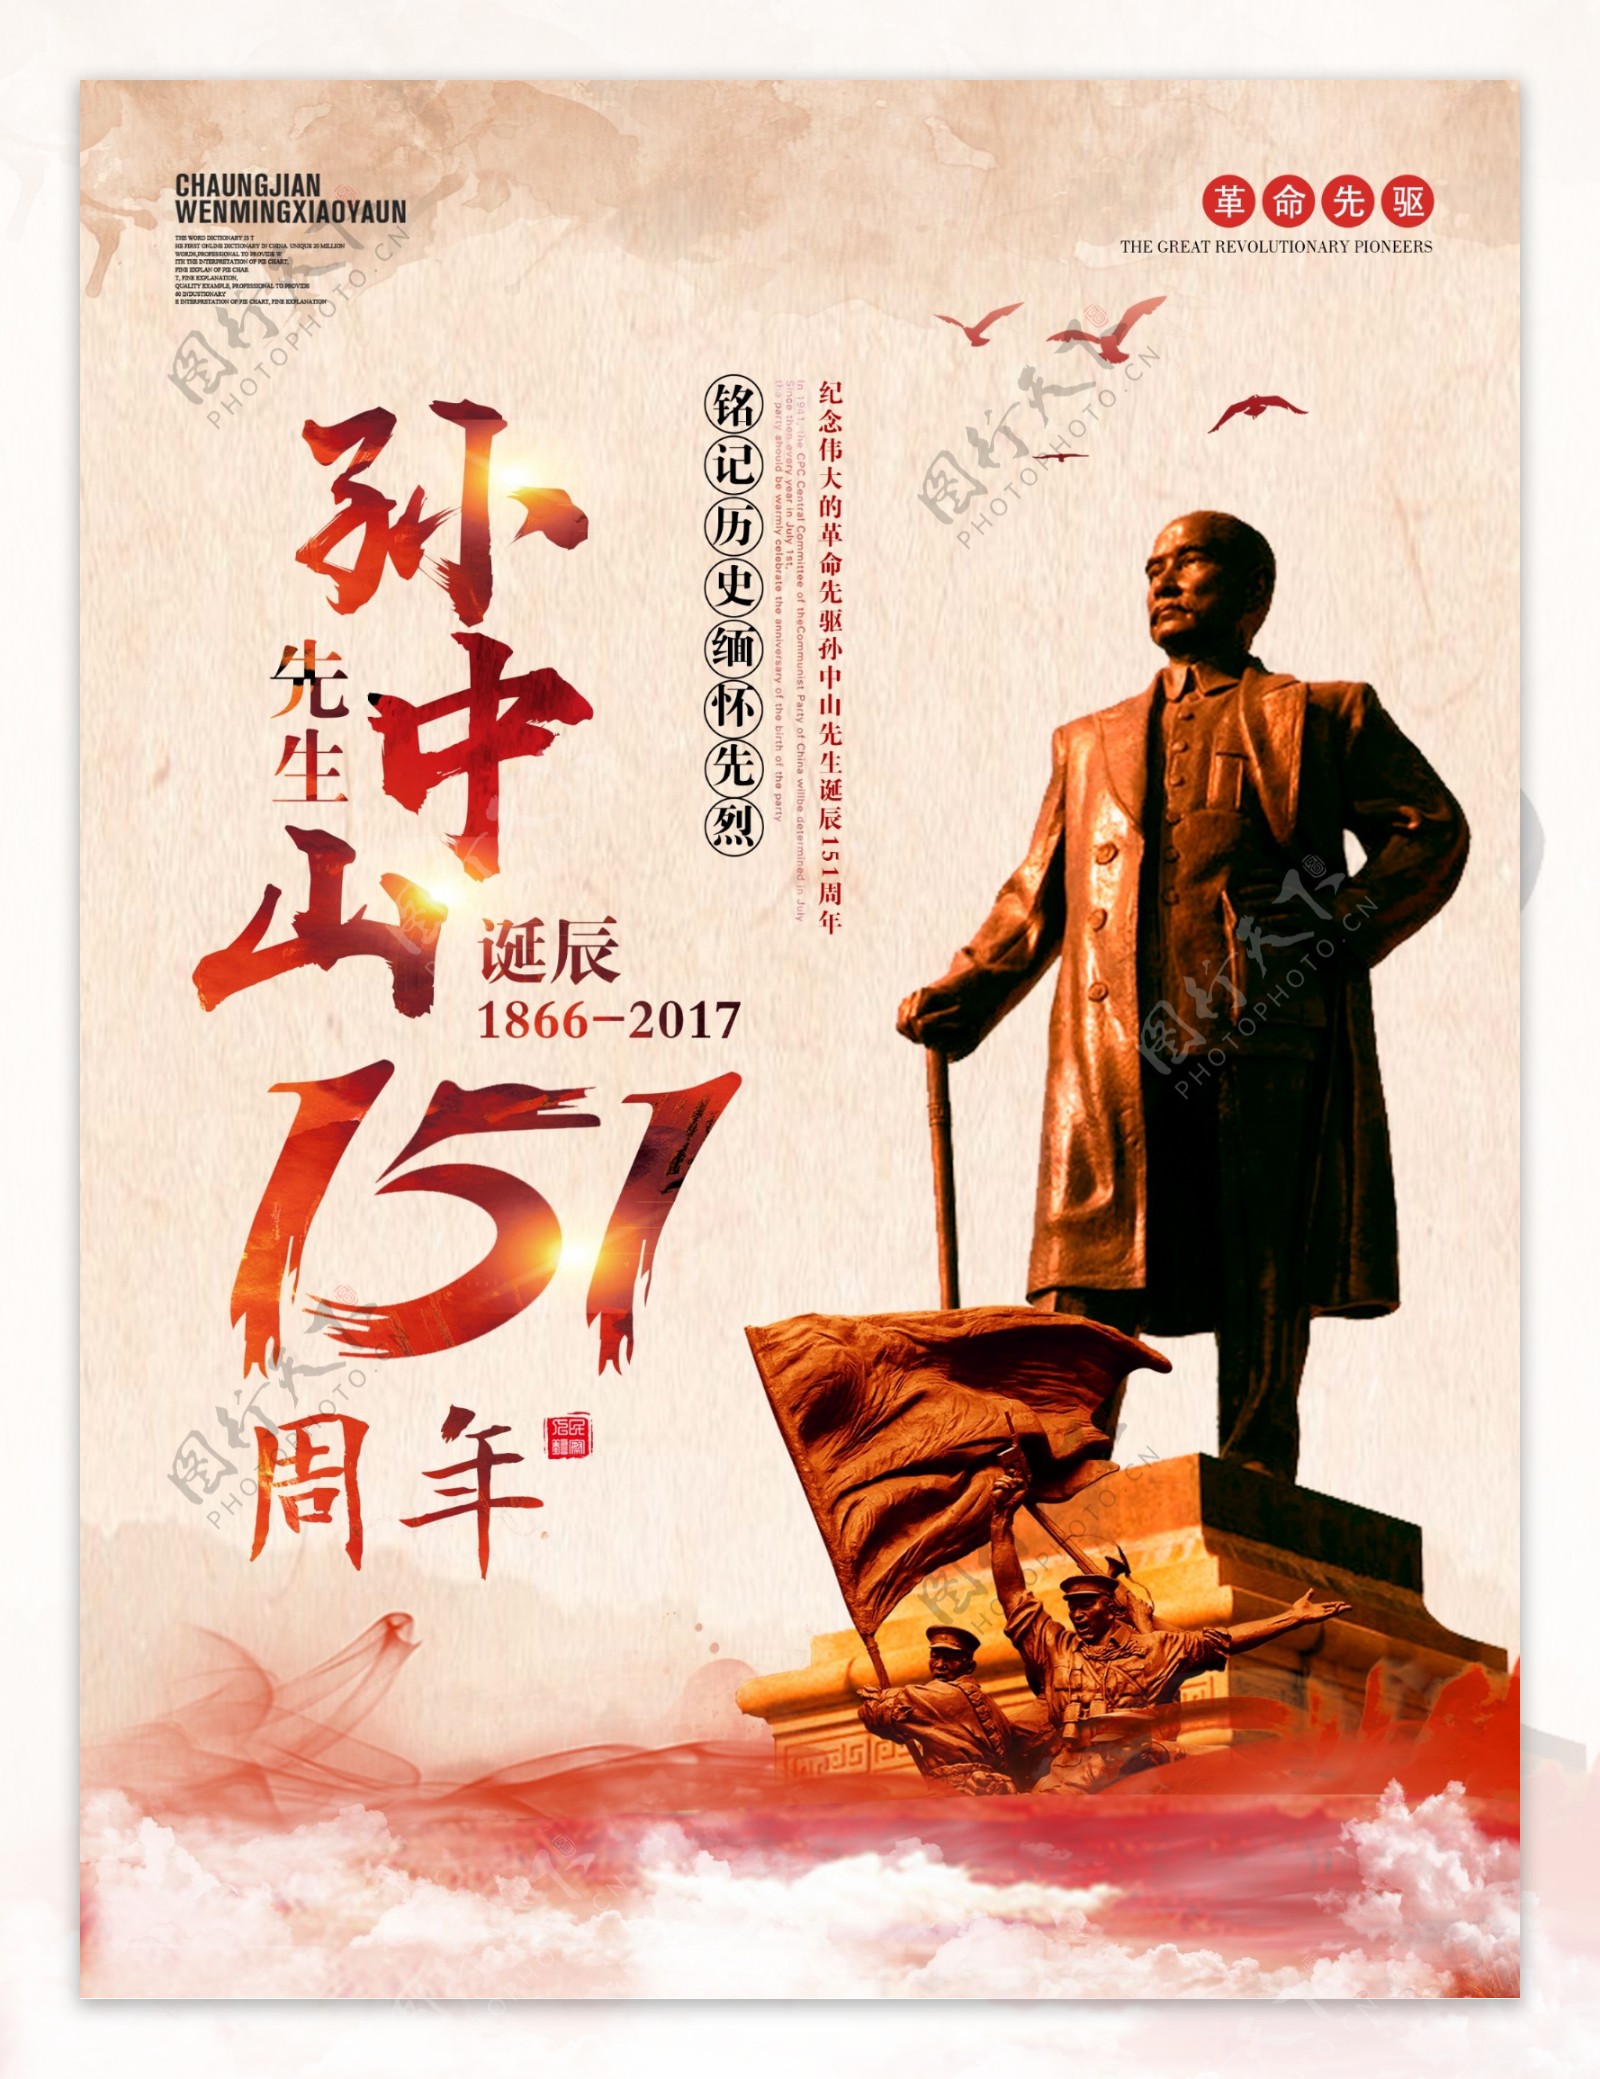 复古中国风孙中山诞辰151周年纪念海报